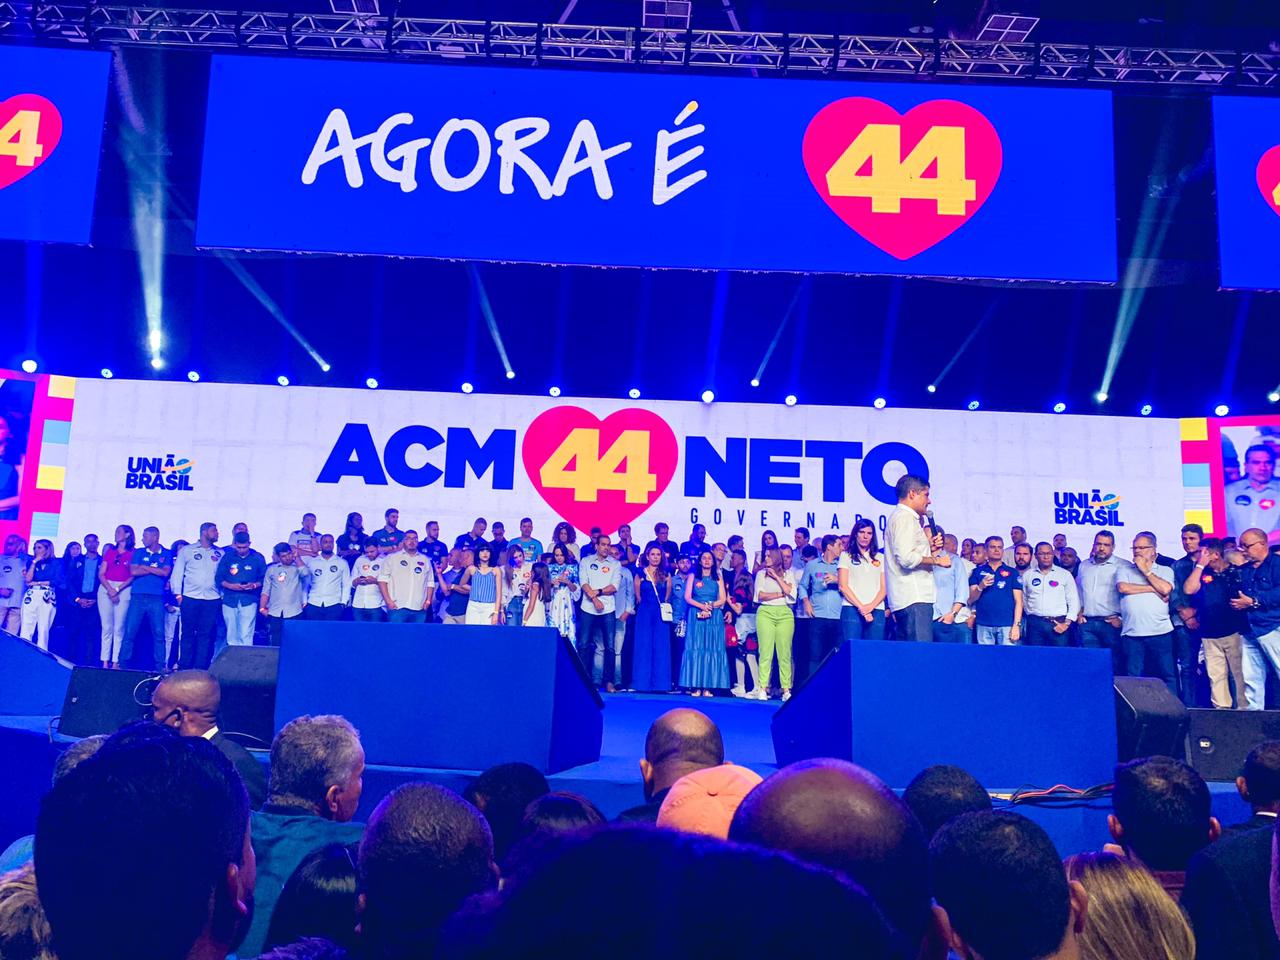 Prefeita de Eunápolis participa da convenção que lançou ACM Neto como candidato a governador da Bahia 24